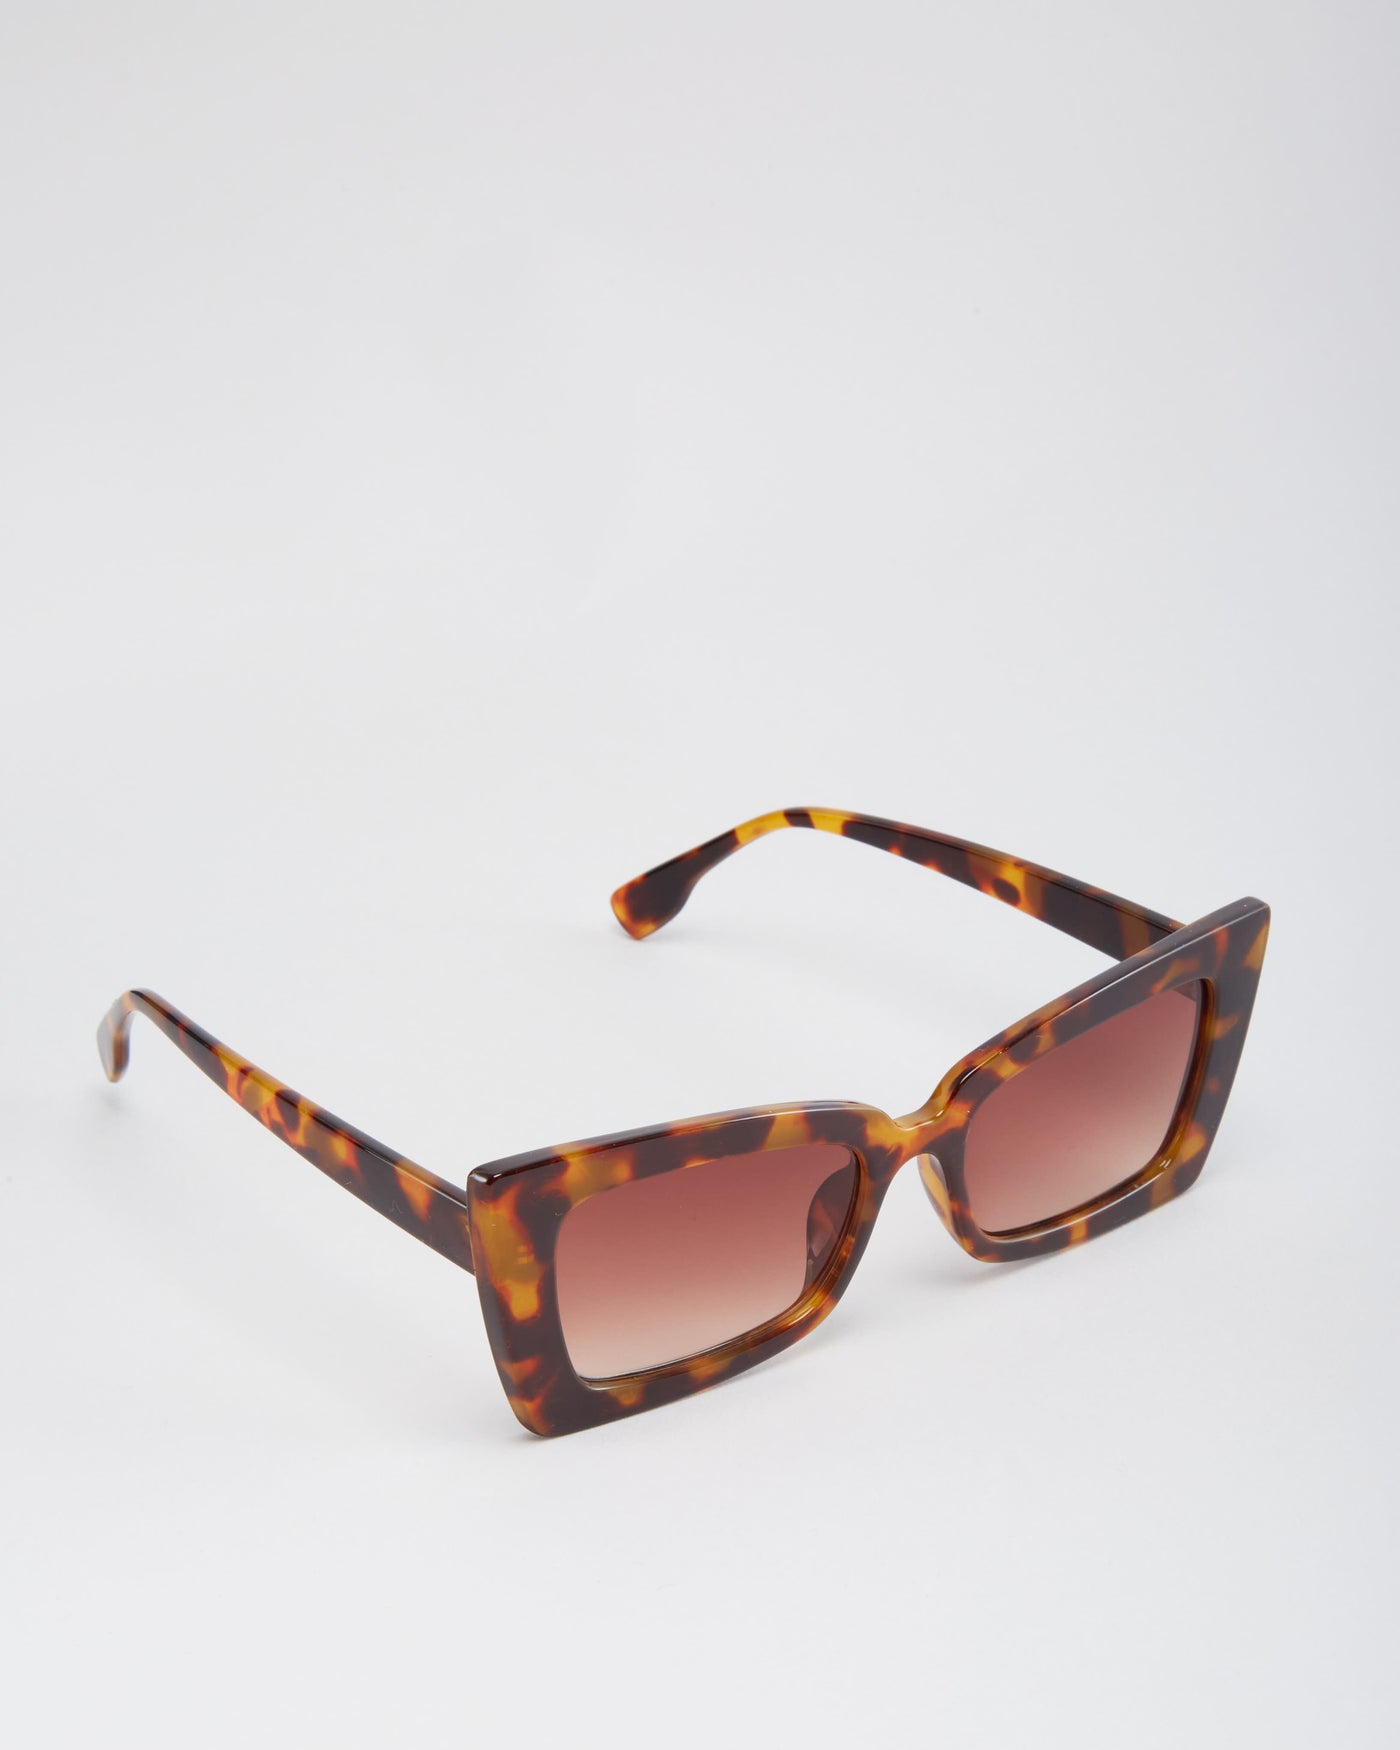 Jan Brown Tortoiseshell Colourway Sunglasses